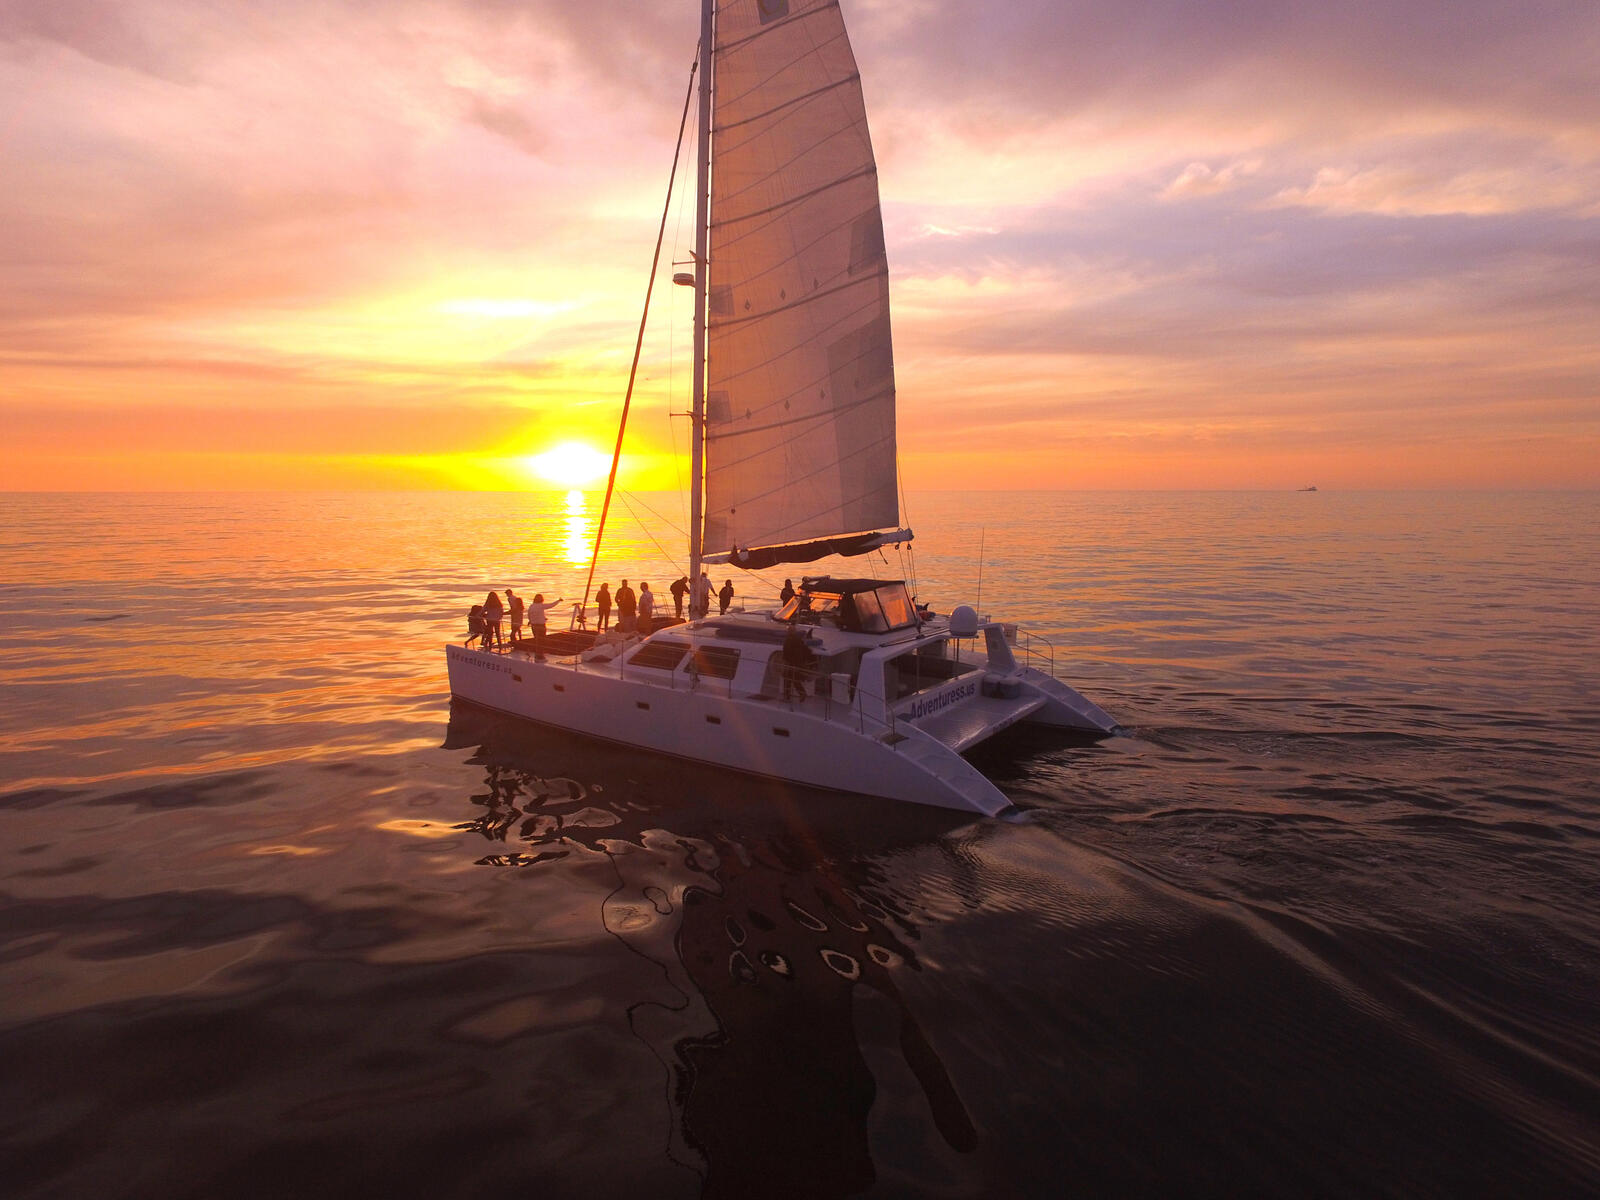 Бесплатное фото Красивые картинки яхта, море бесплатно